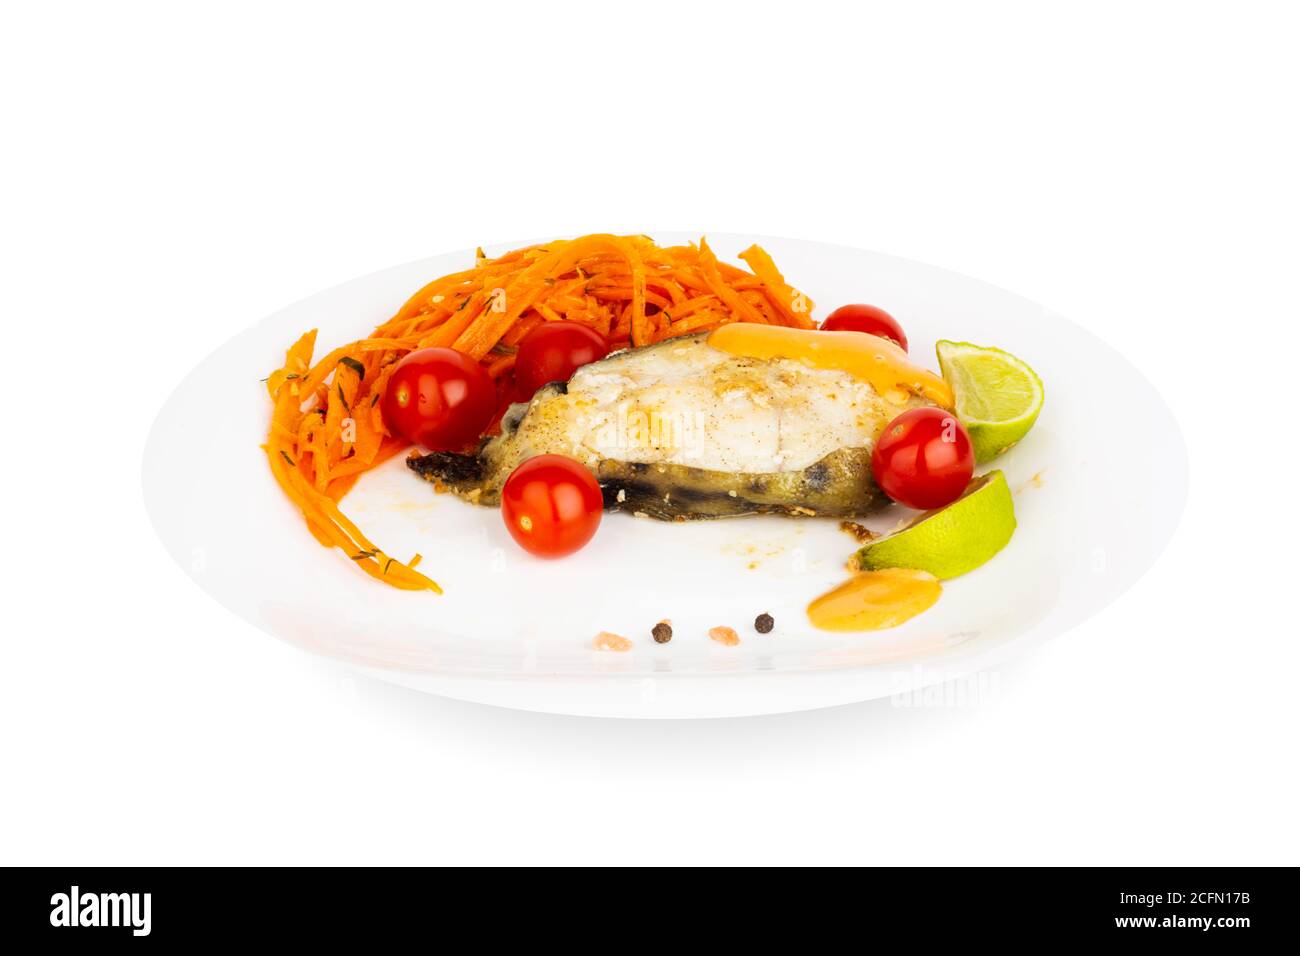 Steak de poisson-chat cuit frit avec garniture de sauce et de légumes sur plaque blanche isolée sur fond blanc Banque D'Images